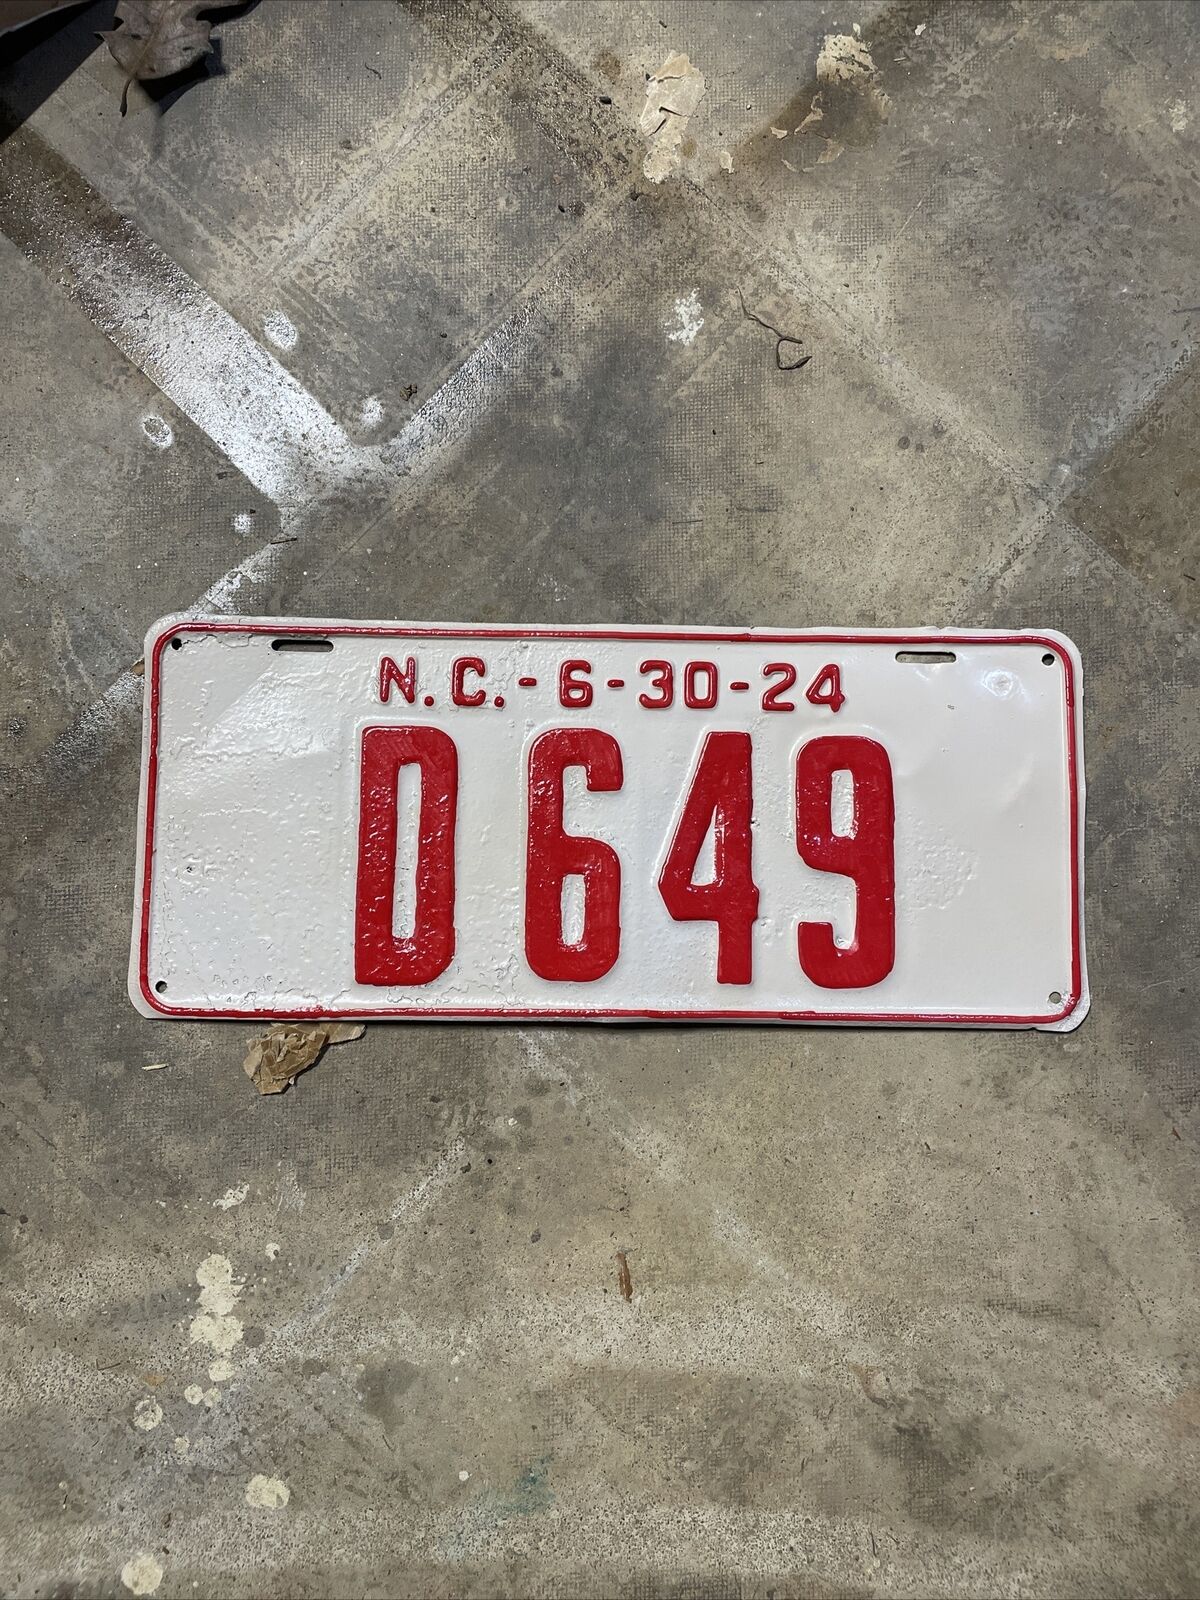 1924 North Carolina Dealer License Plate - “D 649”